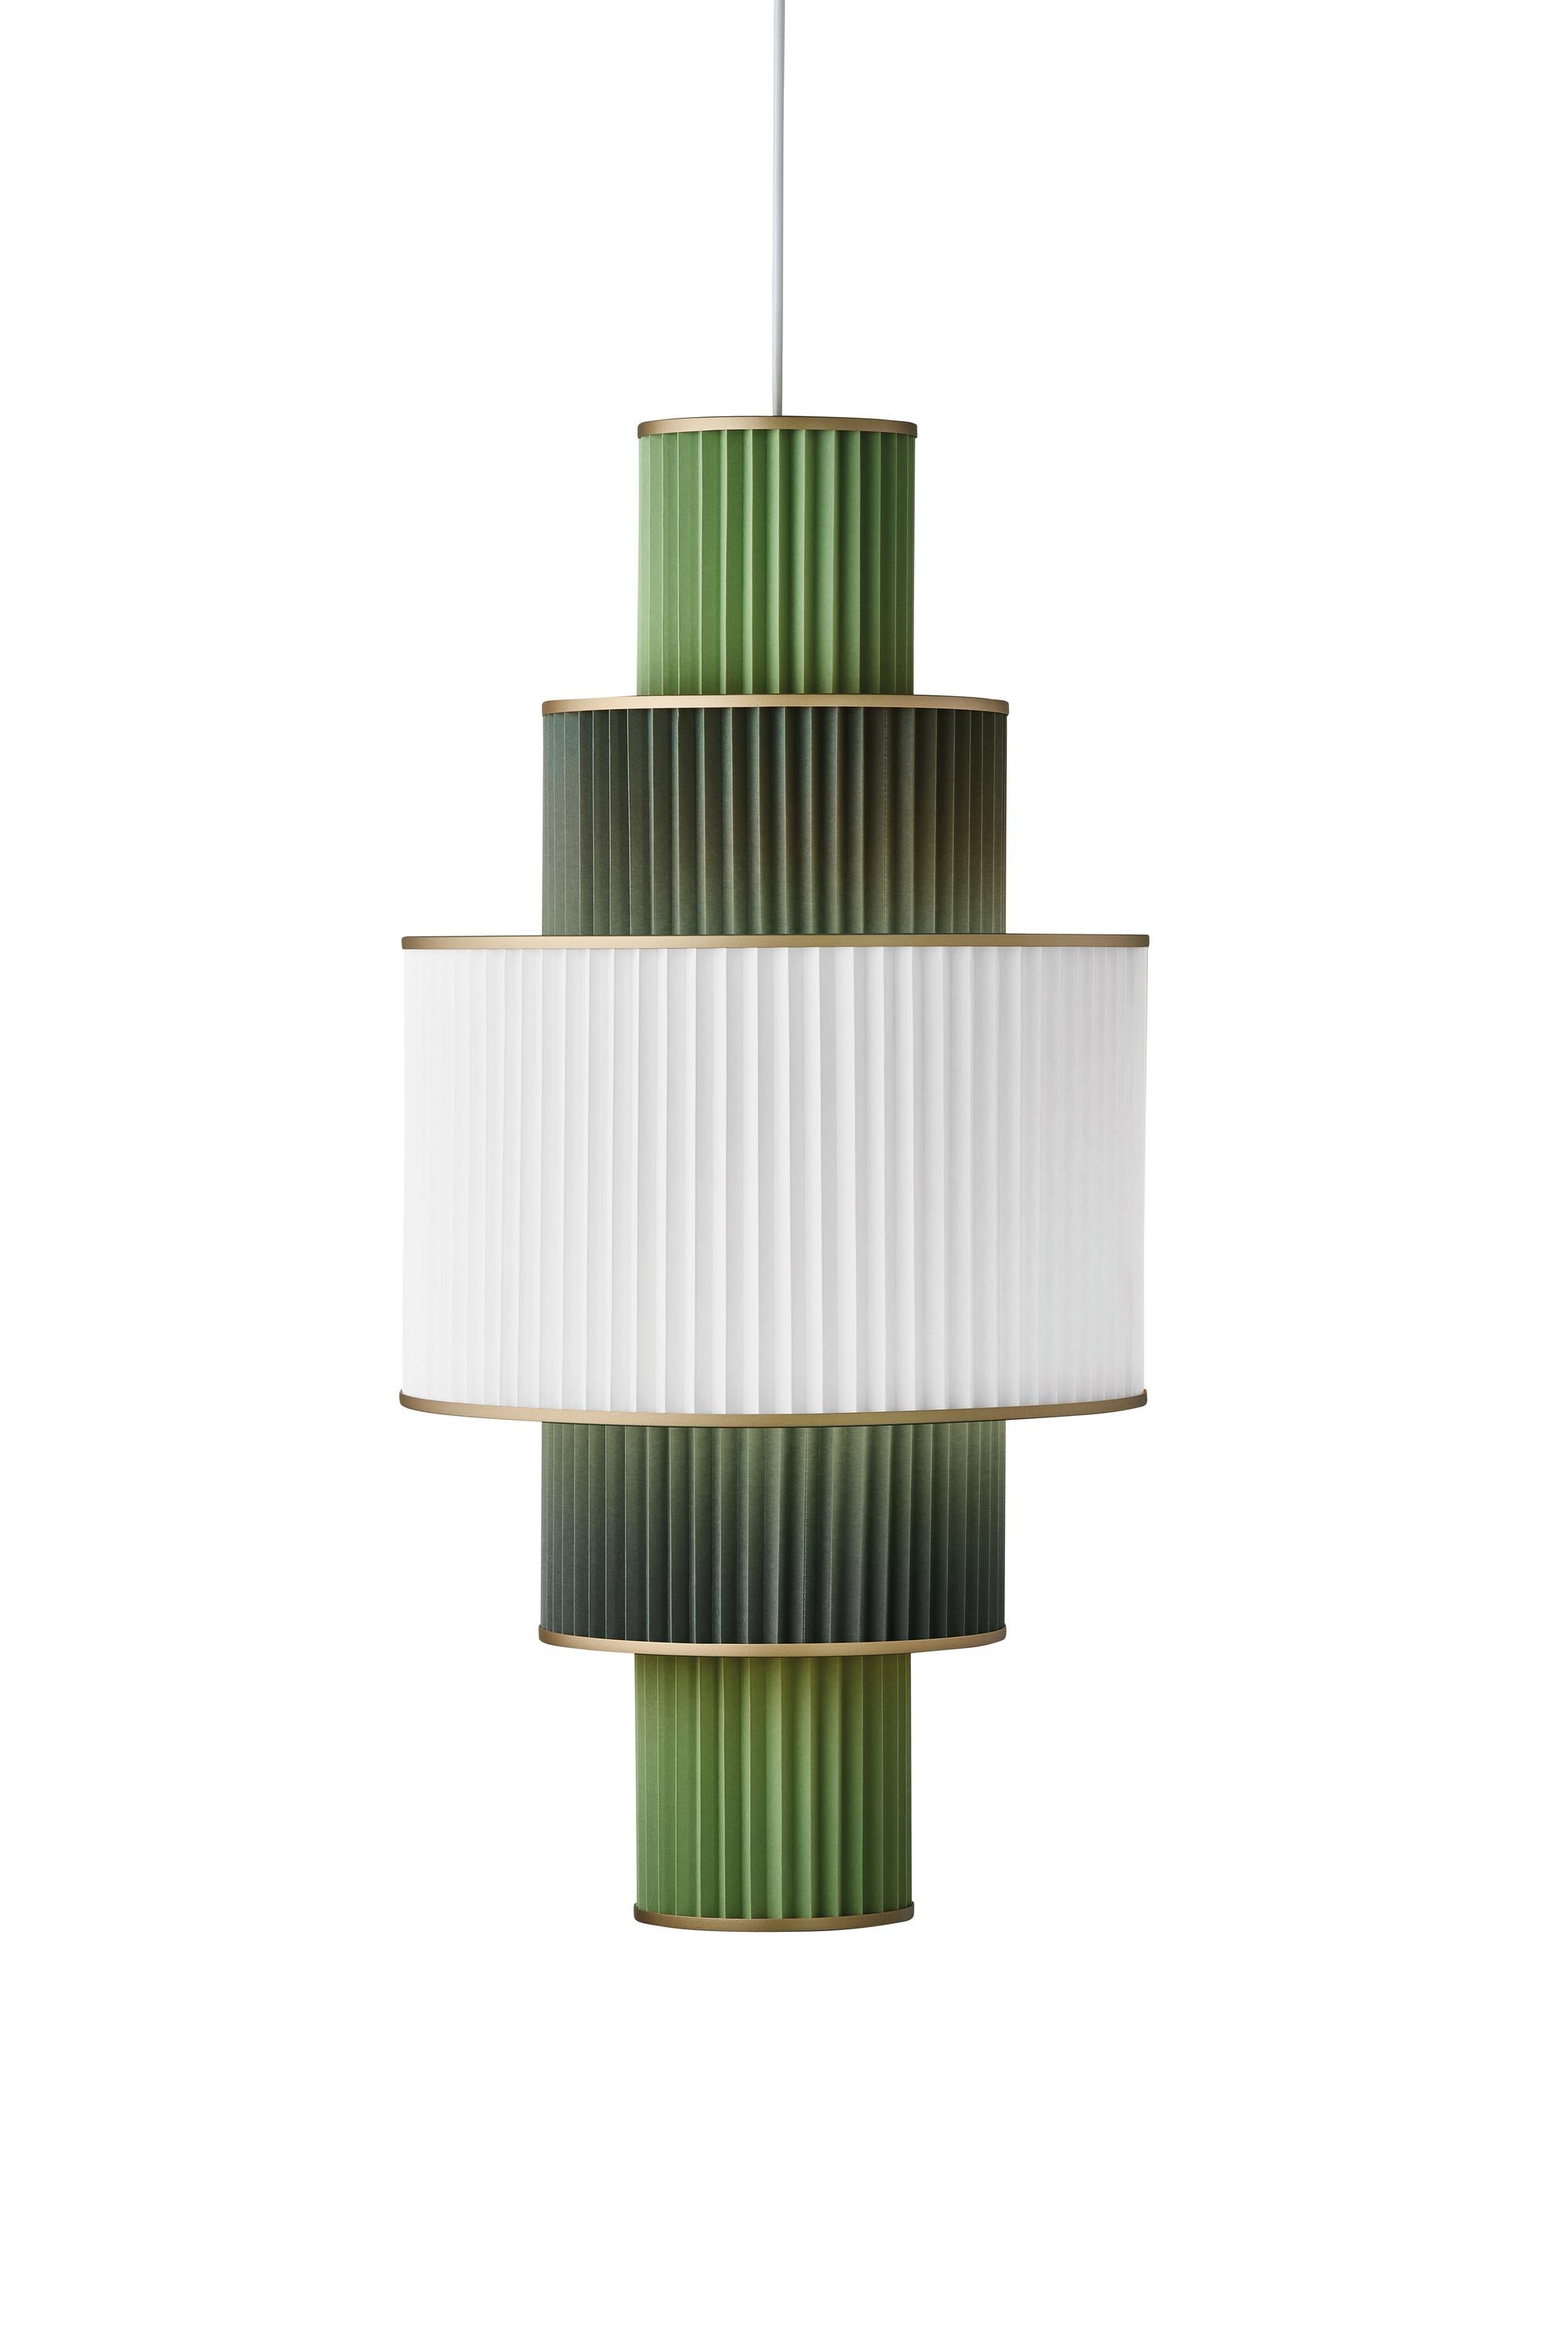 Le Klint PLIVELLO SUSPENSION lampe dorée / blanc / vert clair avec 5 nuances (S M L M S)